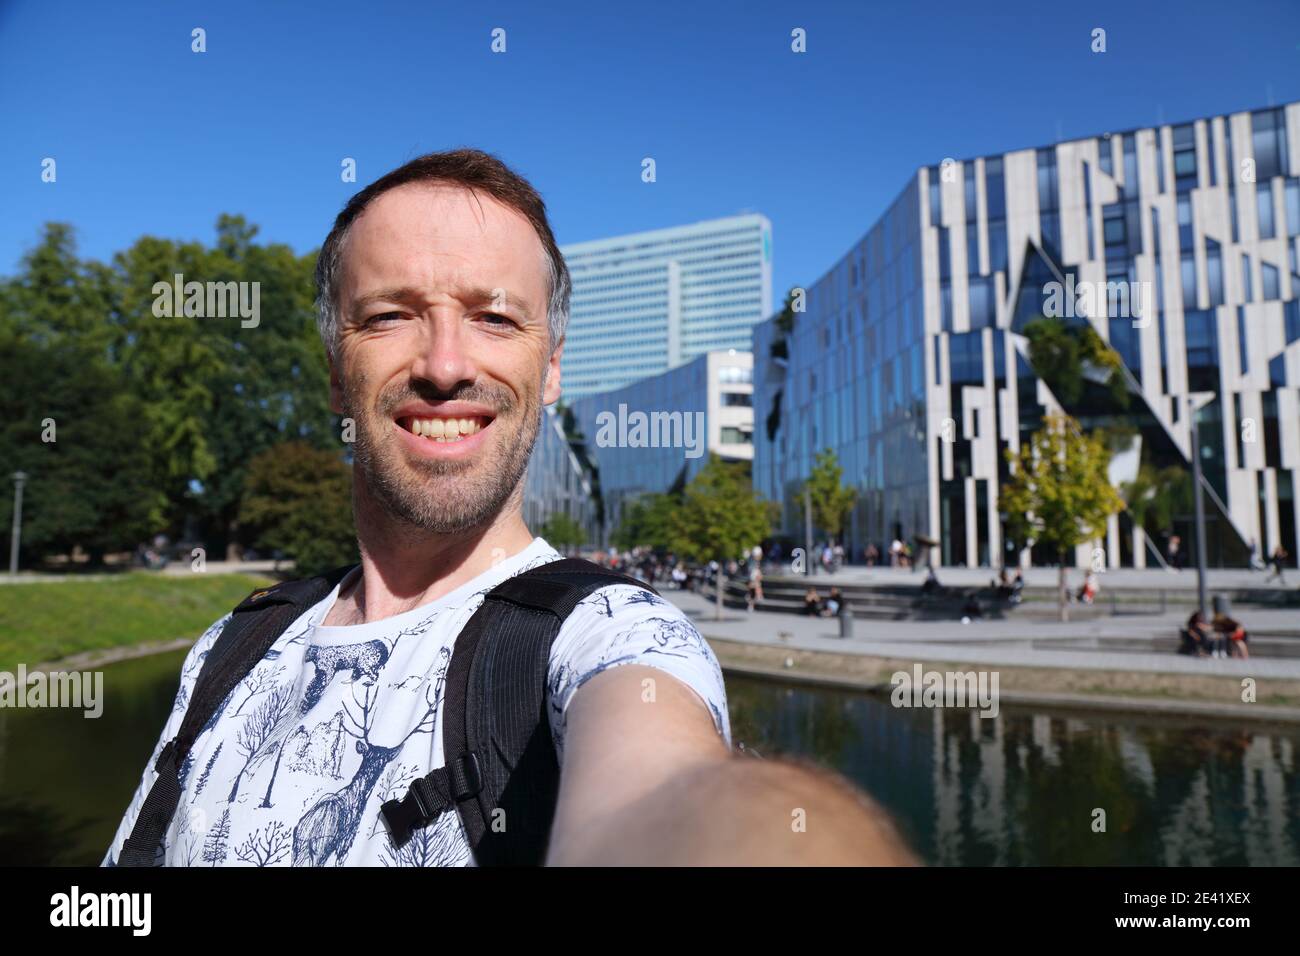 Selfie touristique à Düsseldorf, Allemagne. Le voyageur a le selfie avec l'architecture moderne de Düsseldorf. Banque D'Images